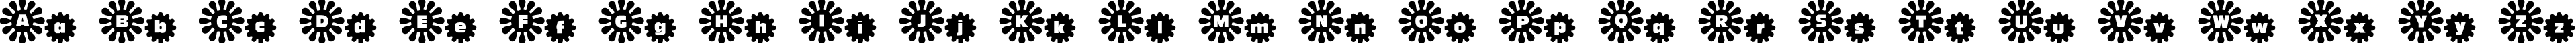 Пример написания английского алфавита шрифтом Shower Flower